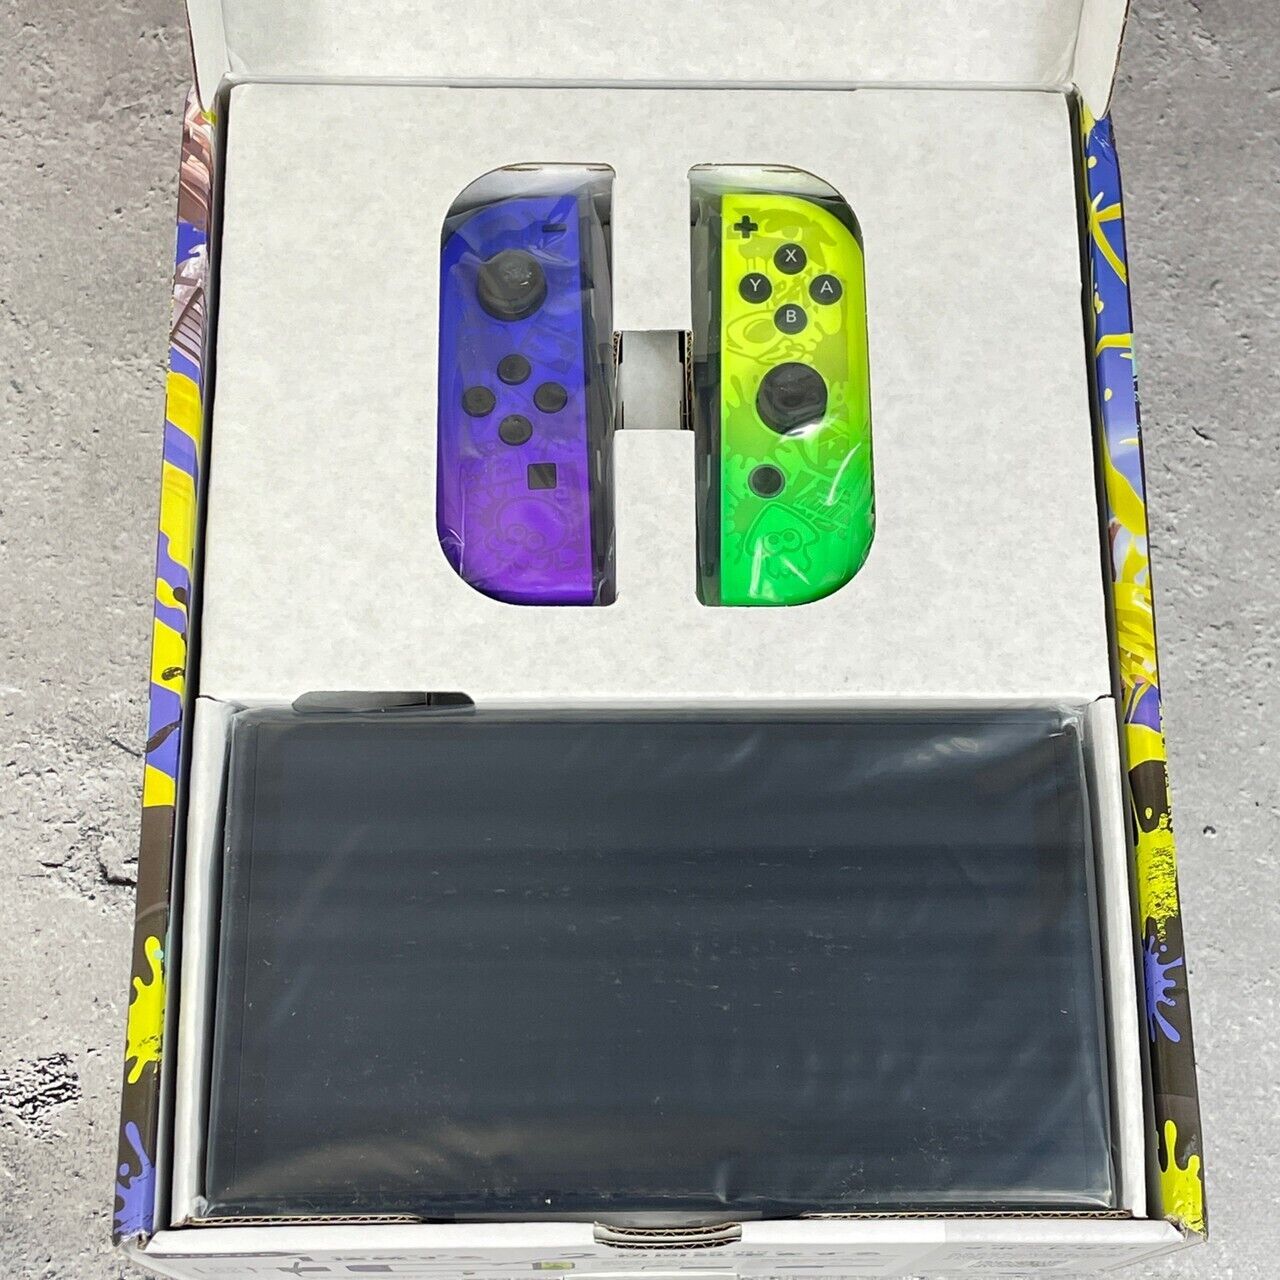 Nintendo Switch OLED Model Splatoon 3 Edition Console with Japanese BaseBallGame